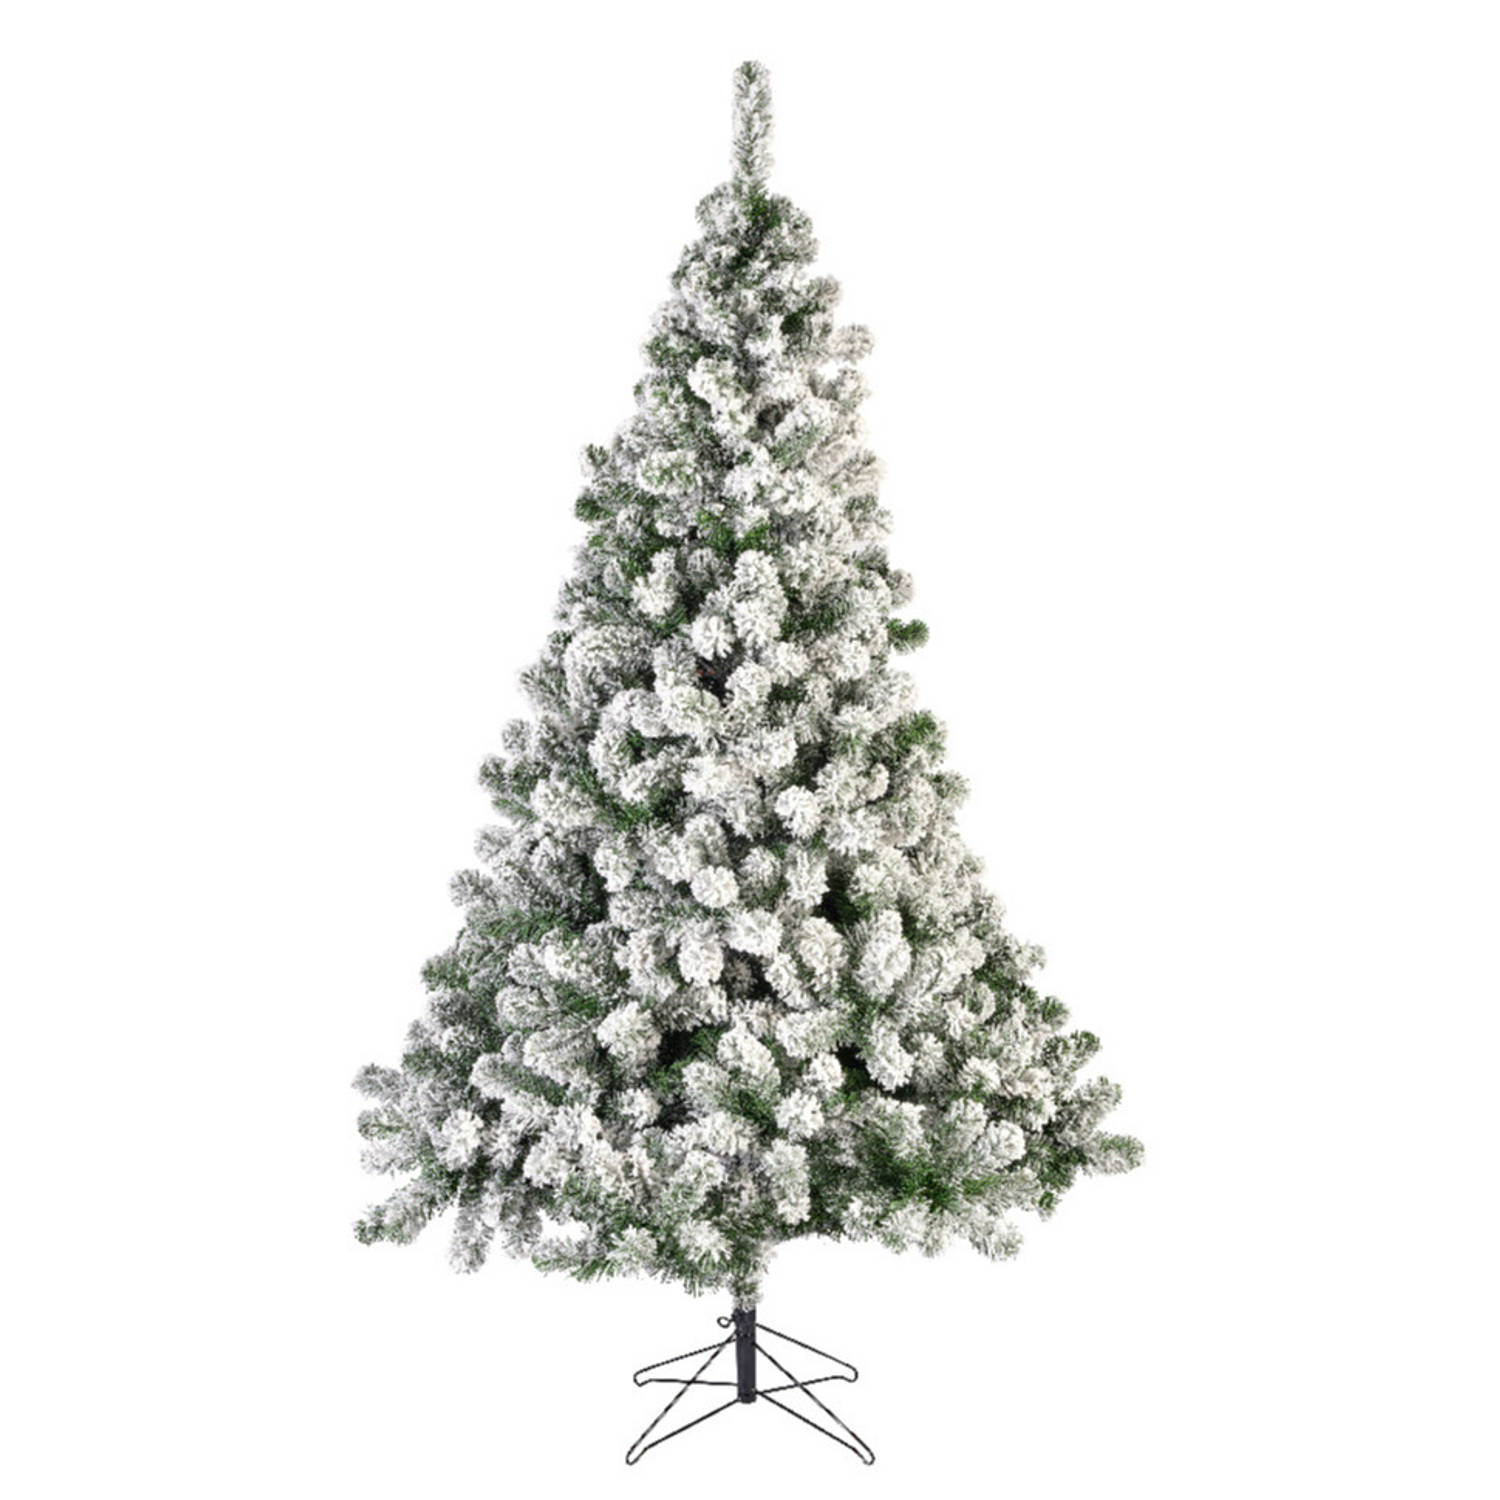 Kunst kerstboom Imperial pine 525 tips met sneeuw 180 cm